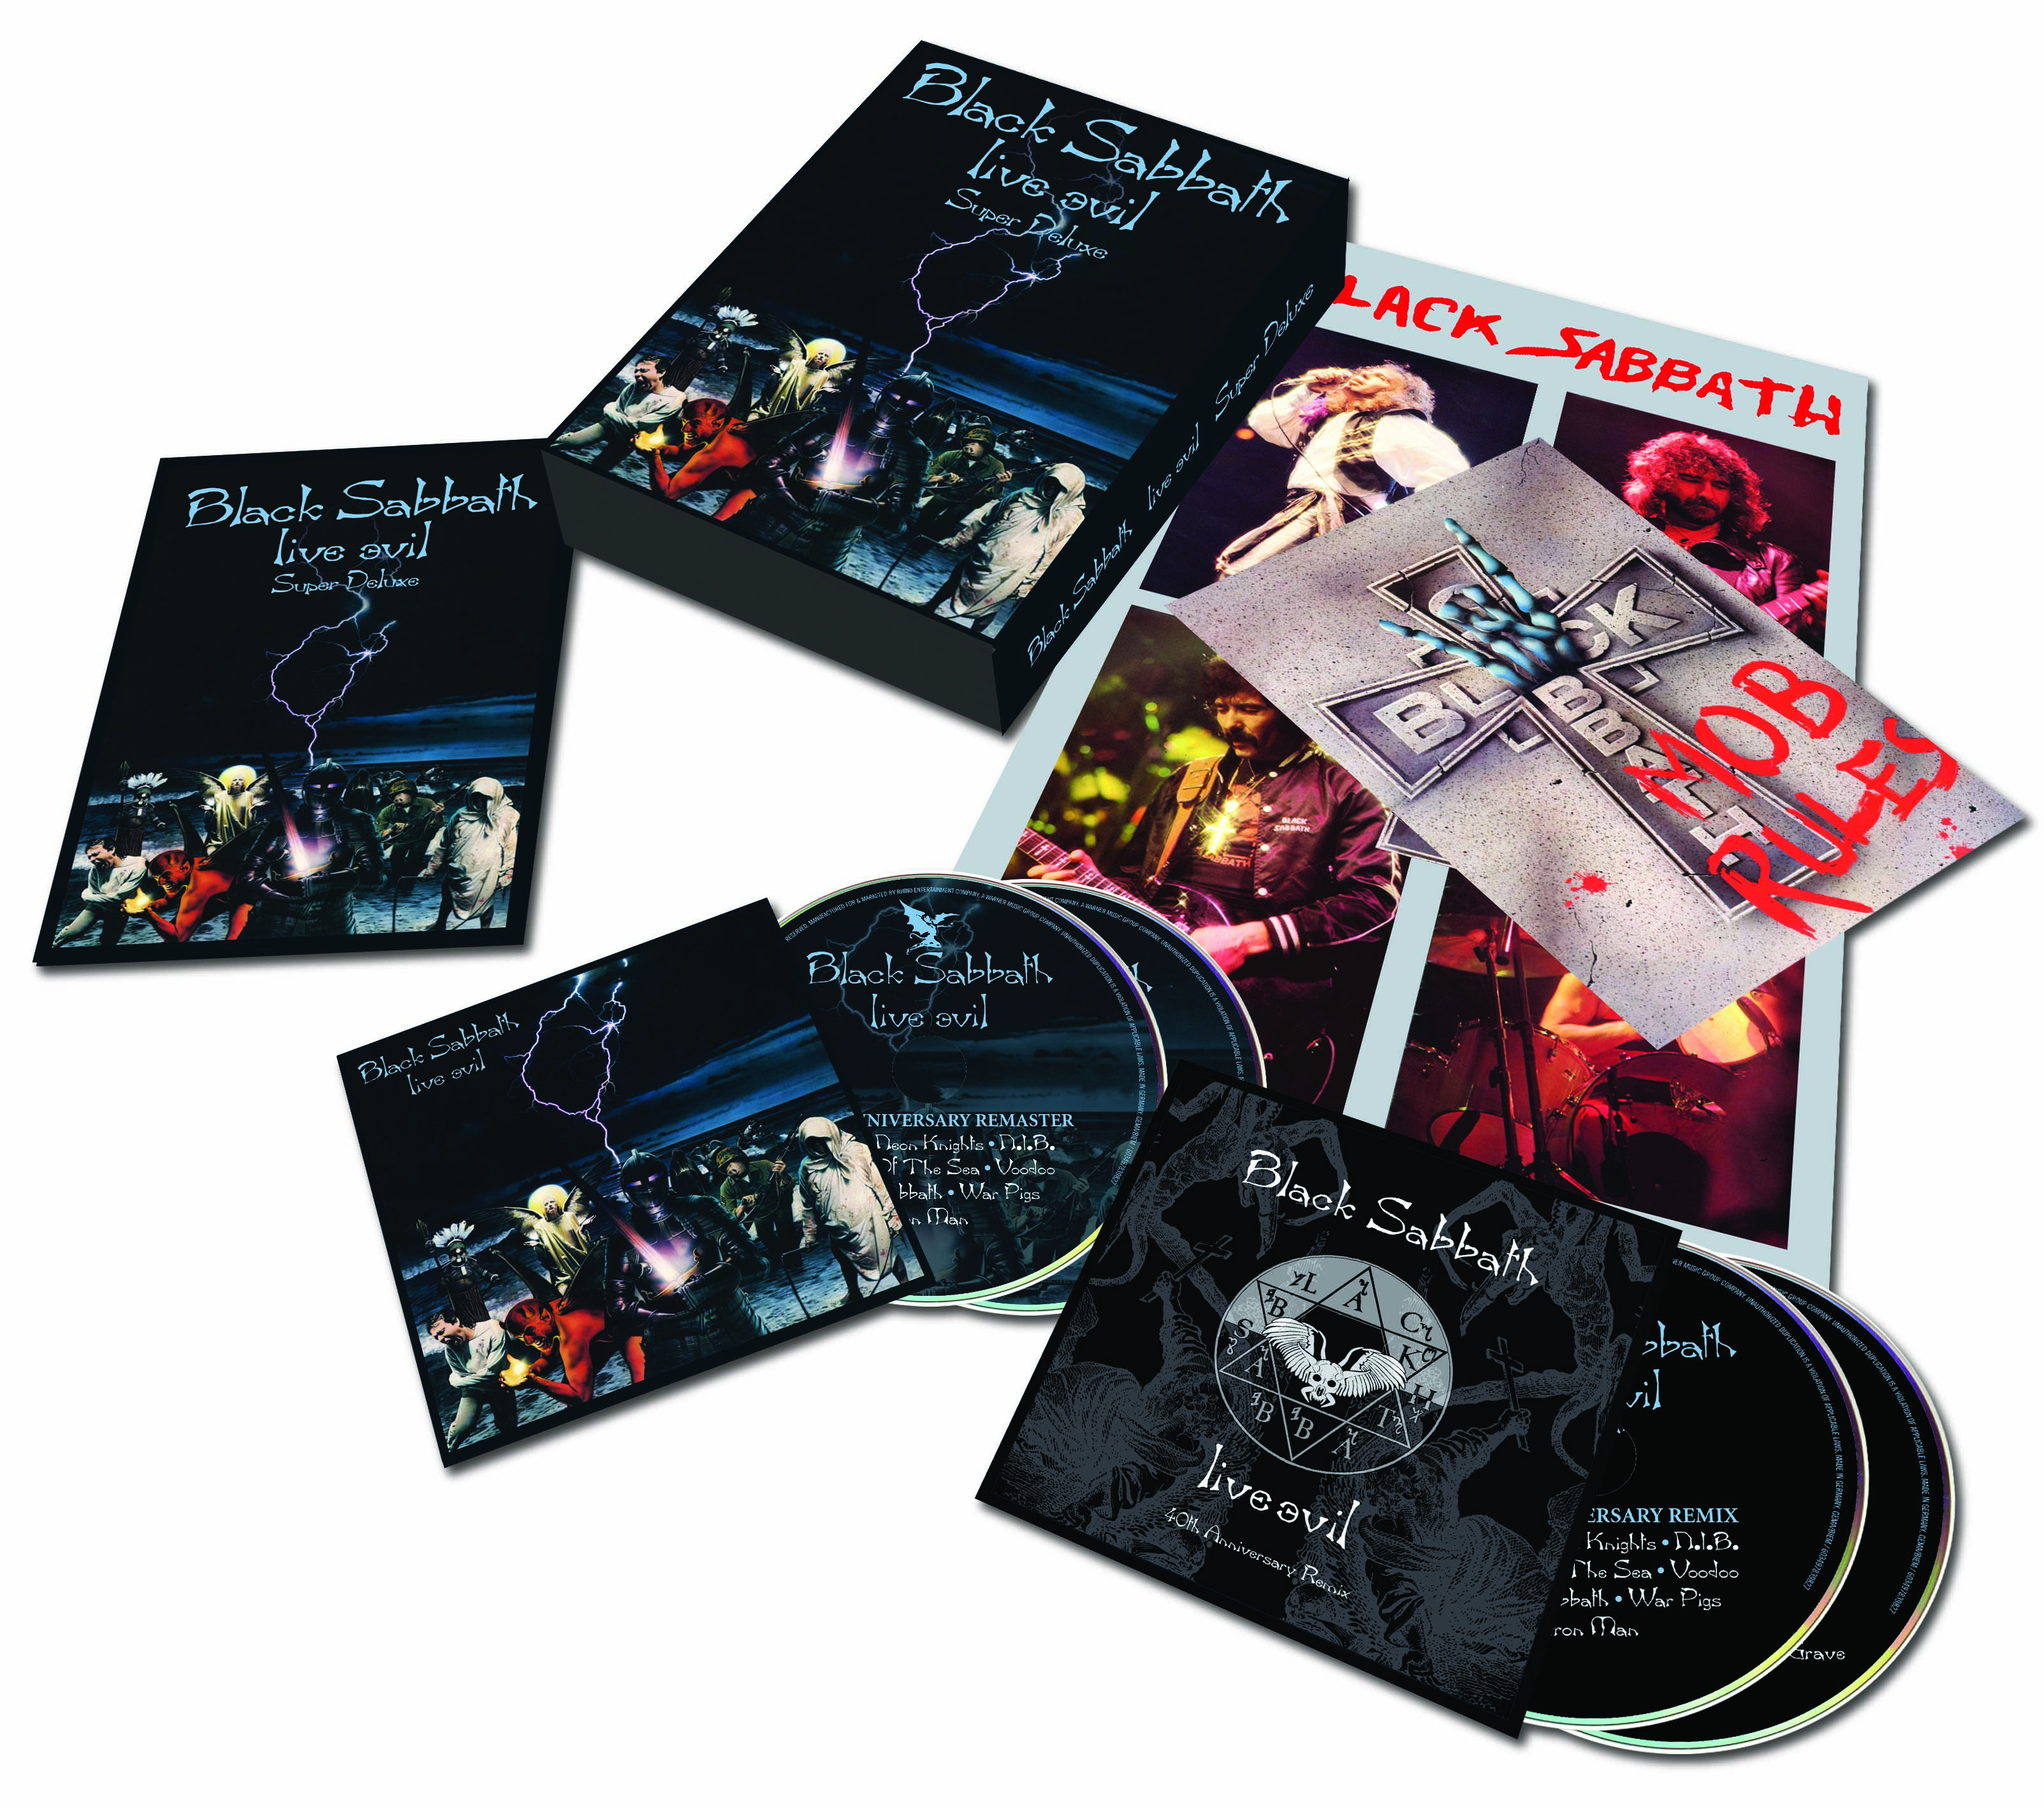 Live Evil (40th Anniversary Super Deluxe Edition) (4CD) | Rhino